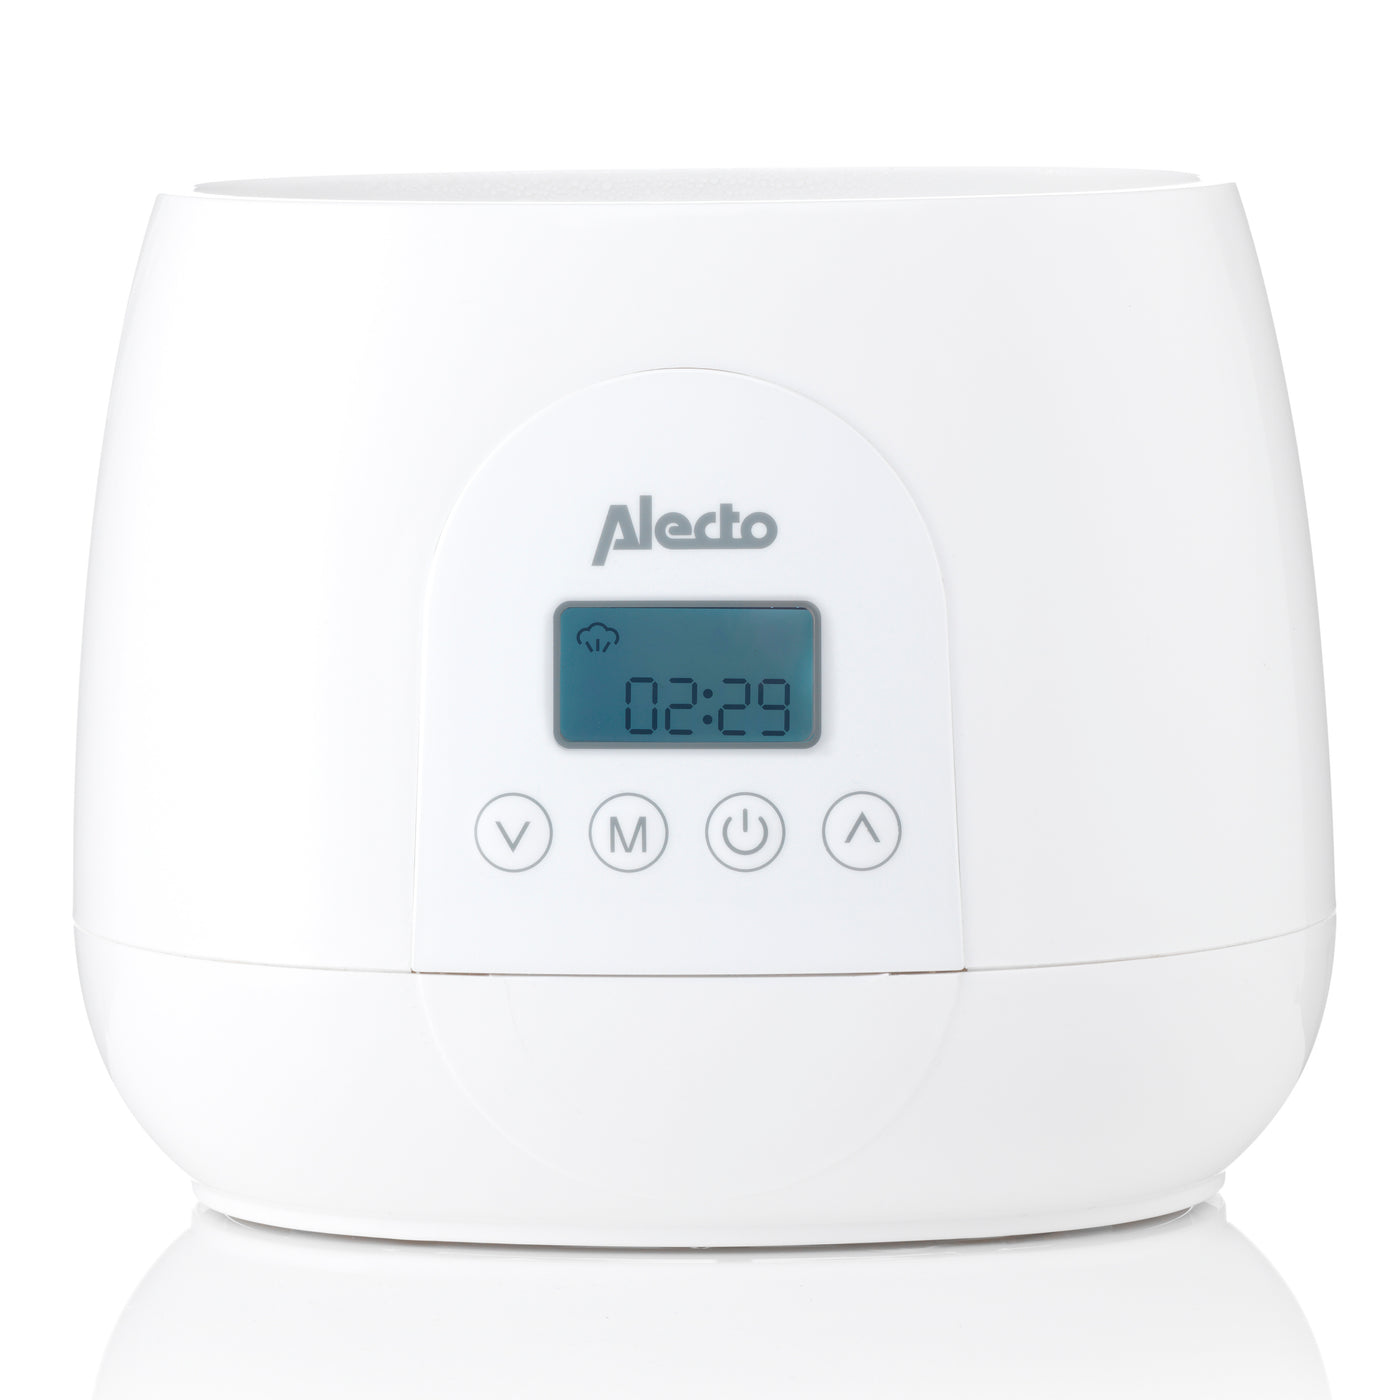 Alecto BW700TWIN - Chauffe-biberon digital duo rapide pour réchauffer, stériliser et décongeler, blanc